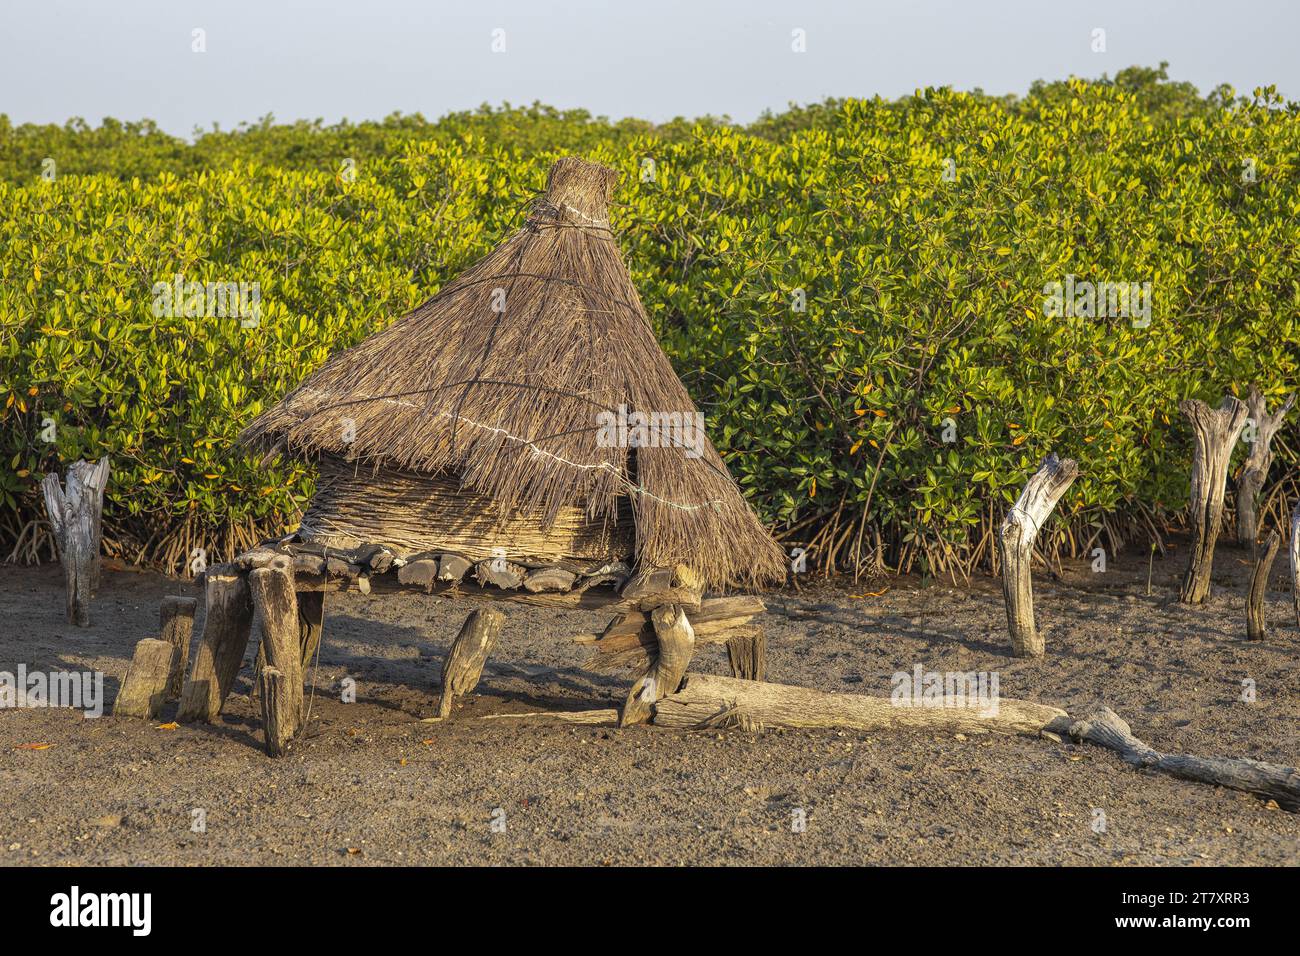 Ancien grenier avec un toit d'herbe sèche sur une île parmi les arbres de mangrove, Joal-Fadiouth, Sénégal, Afrique de l'Ouest, Afrique Banque D'Images